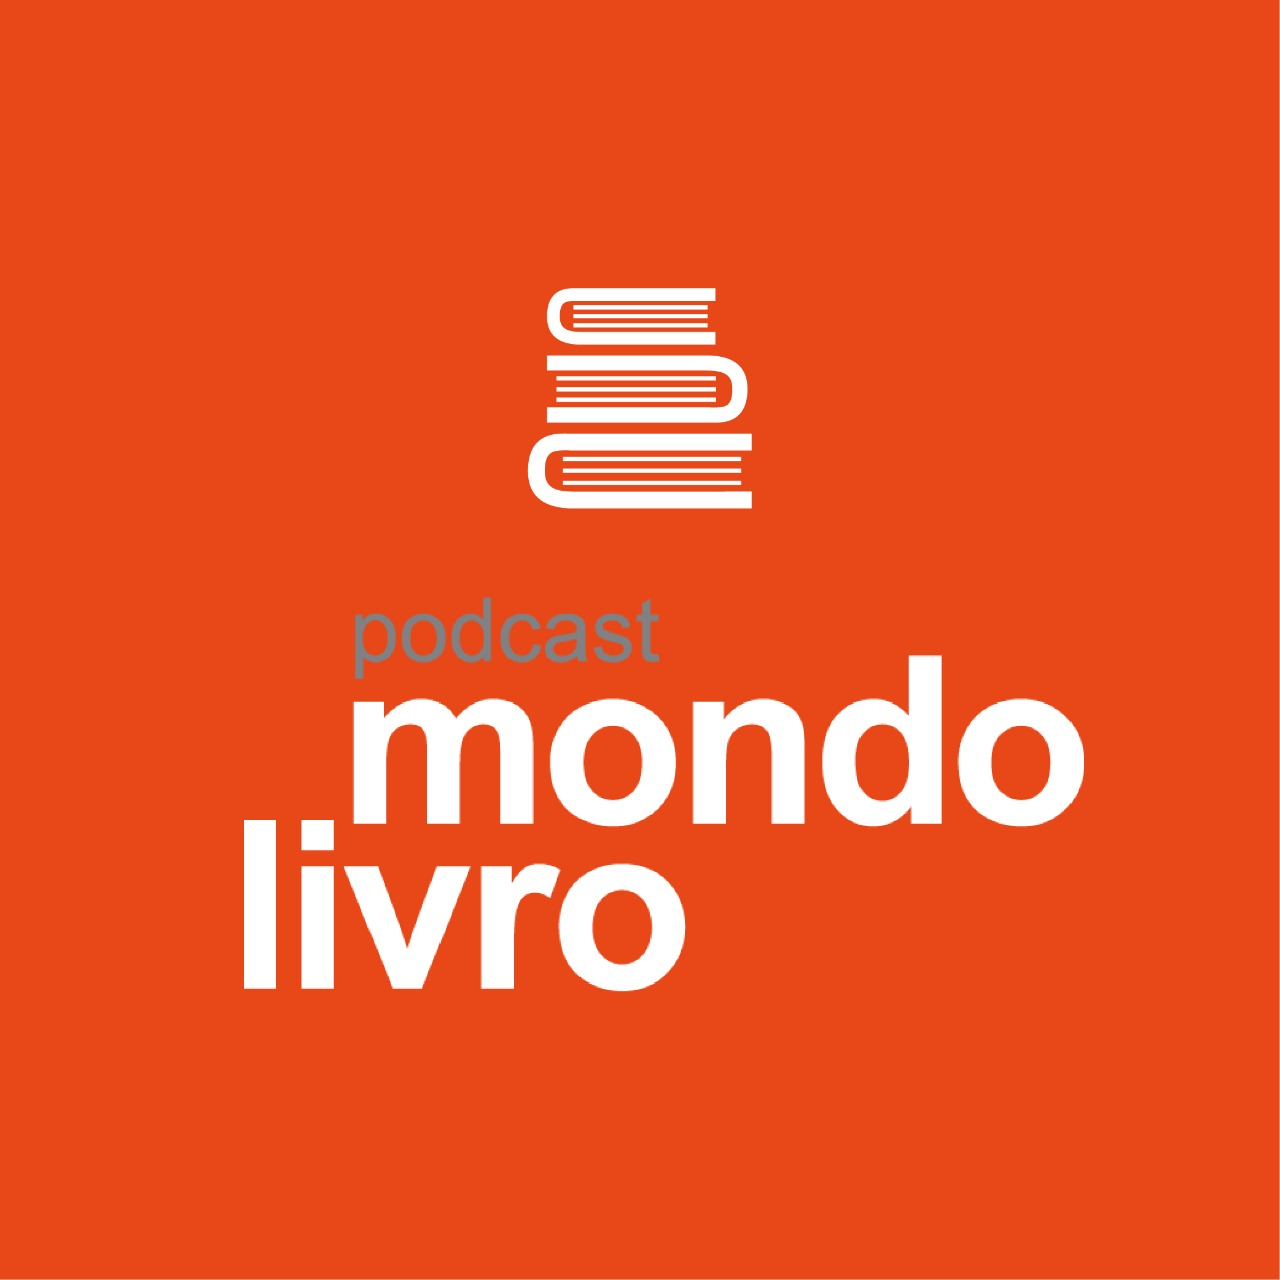 Mondolivro - "Toda a poesia que não escrevi", livro de estreia de Laura Rossetti